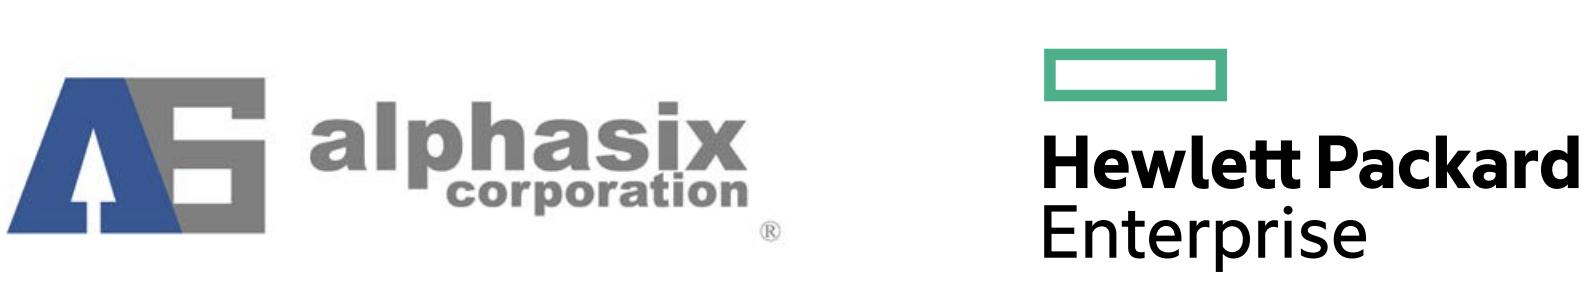 alphasix HP logo.png